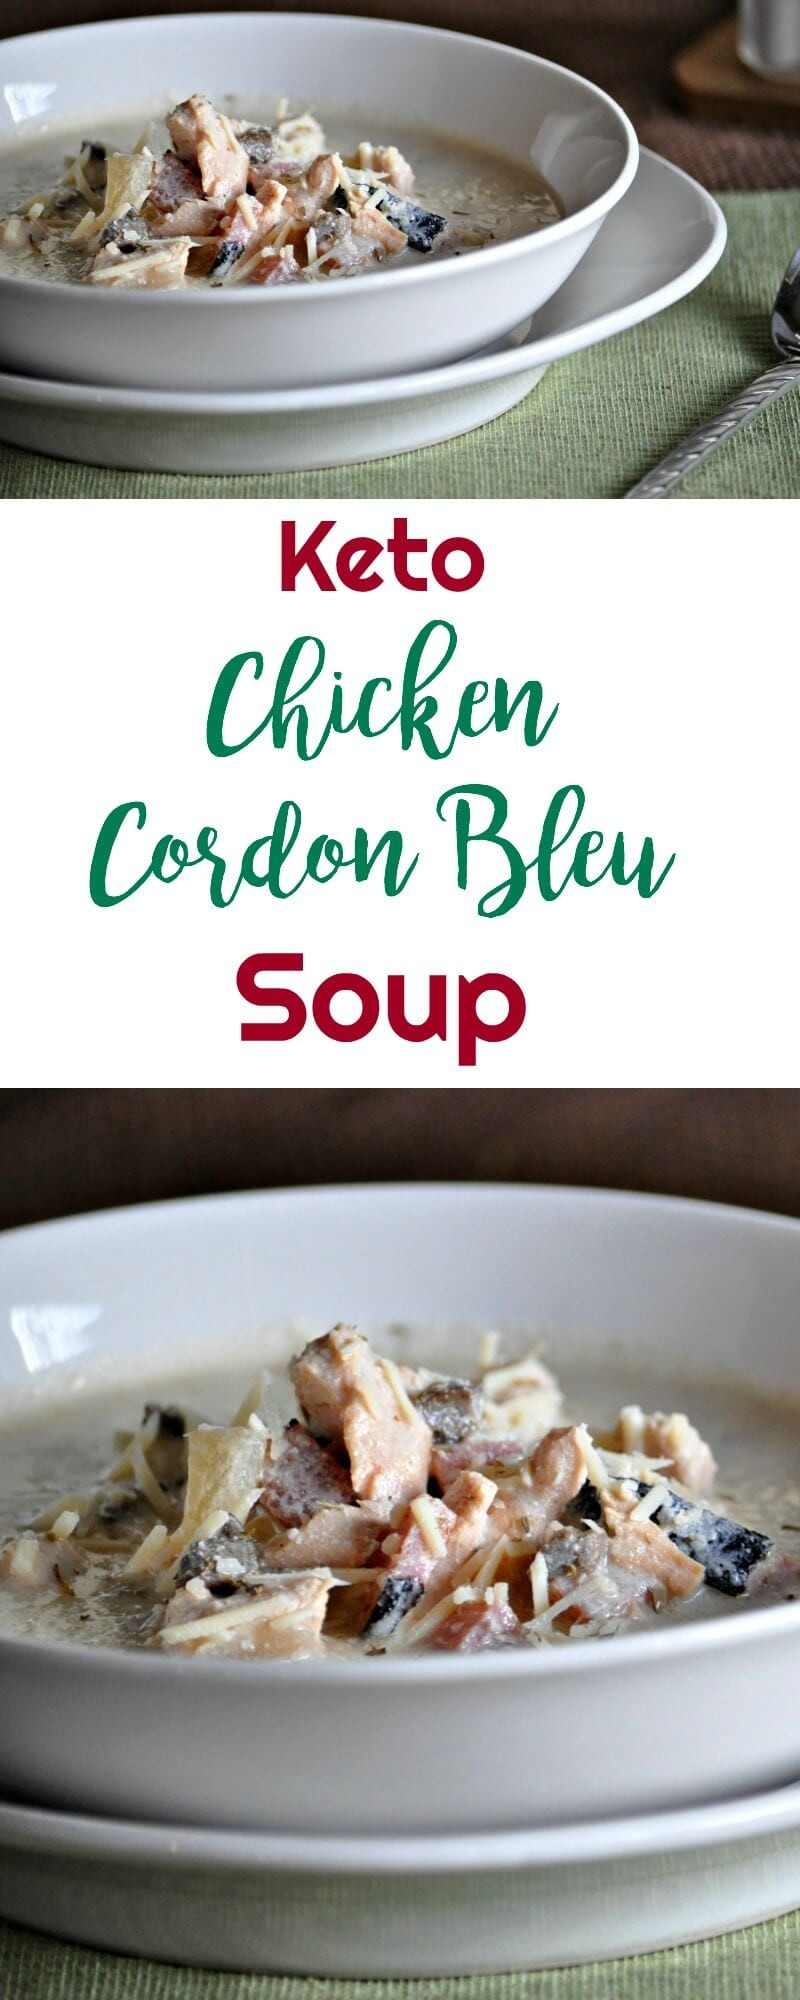 Chicken Cordon Bleu Soup
 Keto Chicken Cordon Bleu Soup